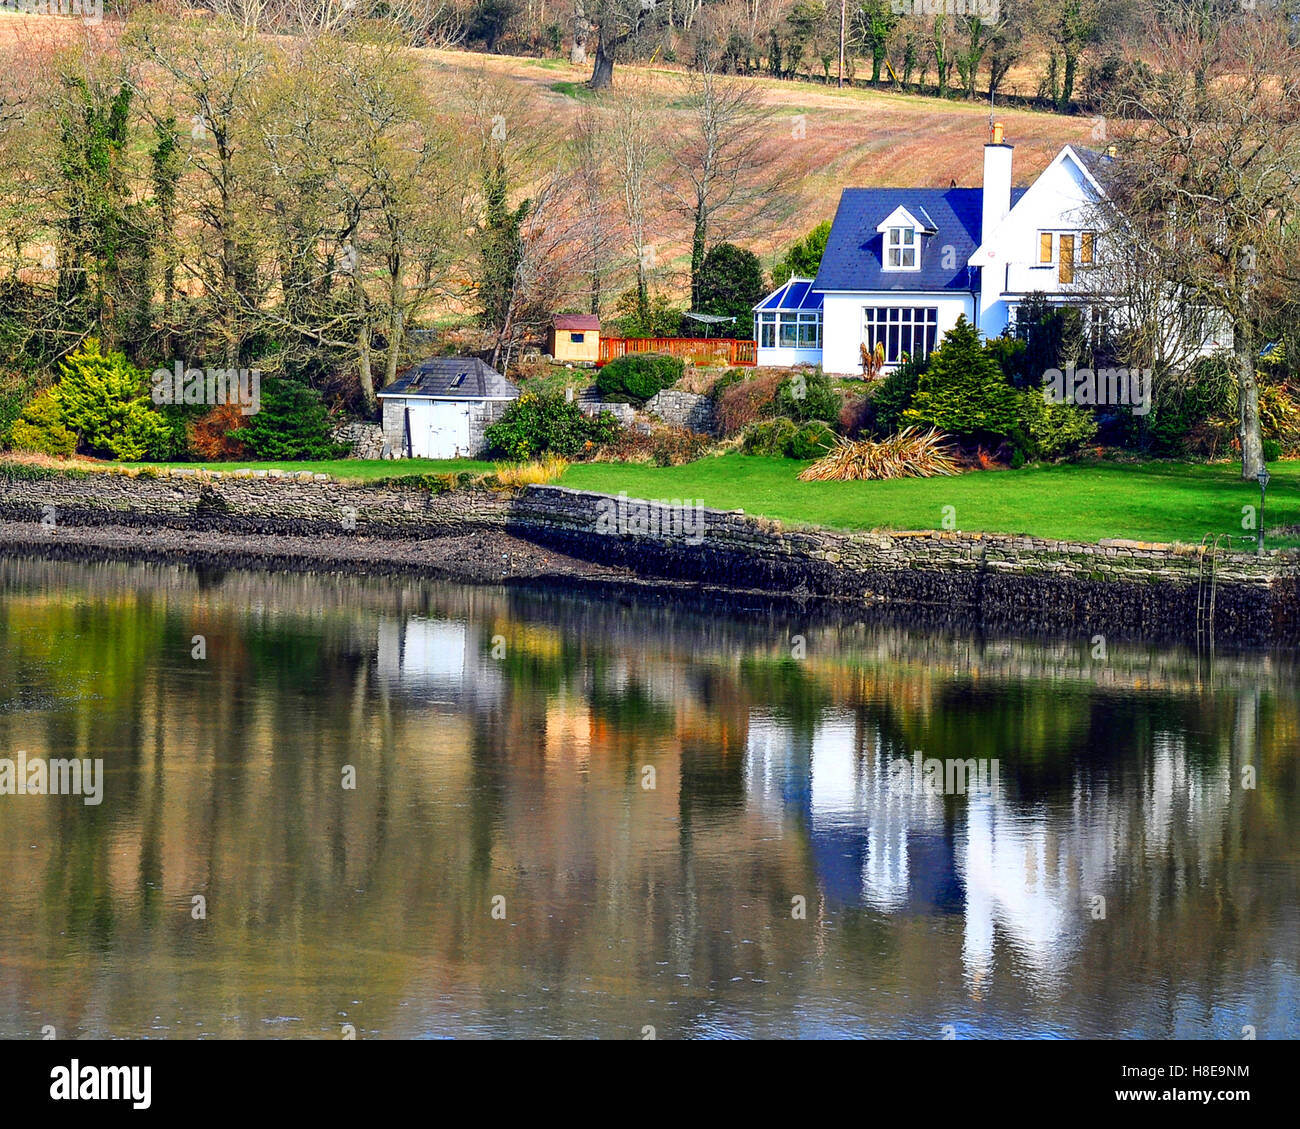 Maison de campagne ou maison riveraine sur la rive d'une rivière, Cork, Irlande. Banque D'Images